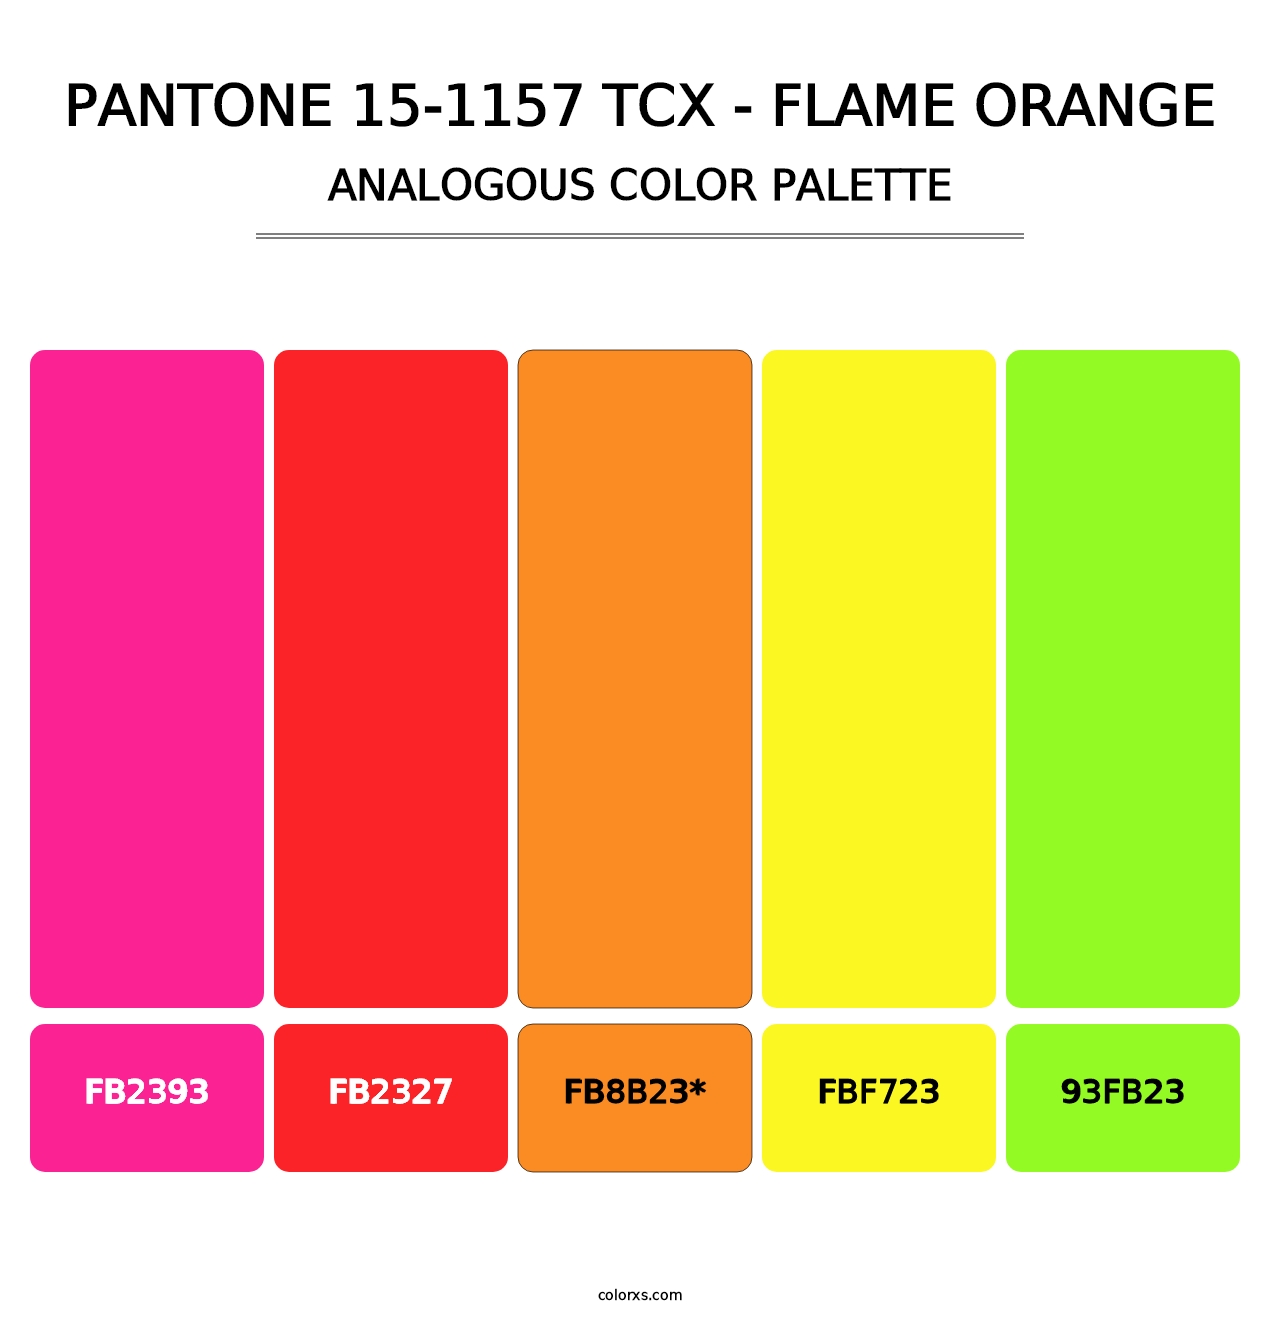 PANTONE 15-1157 TCX - Flame Orange - Analogous Color Palette